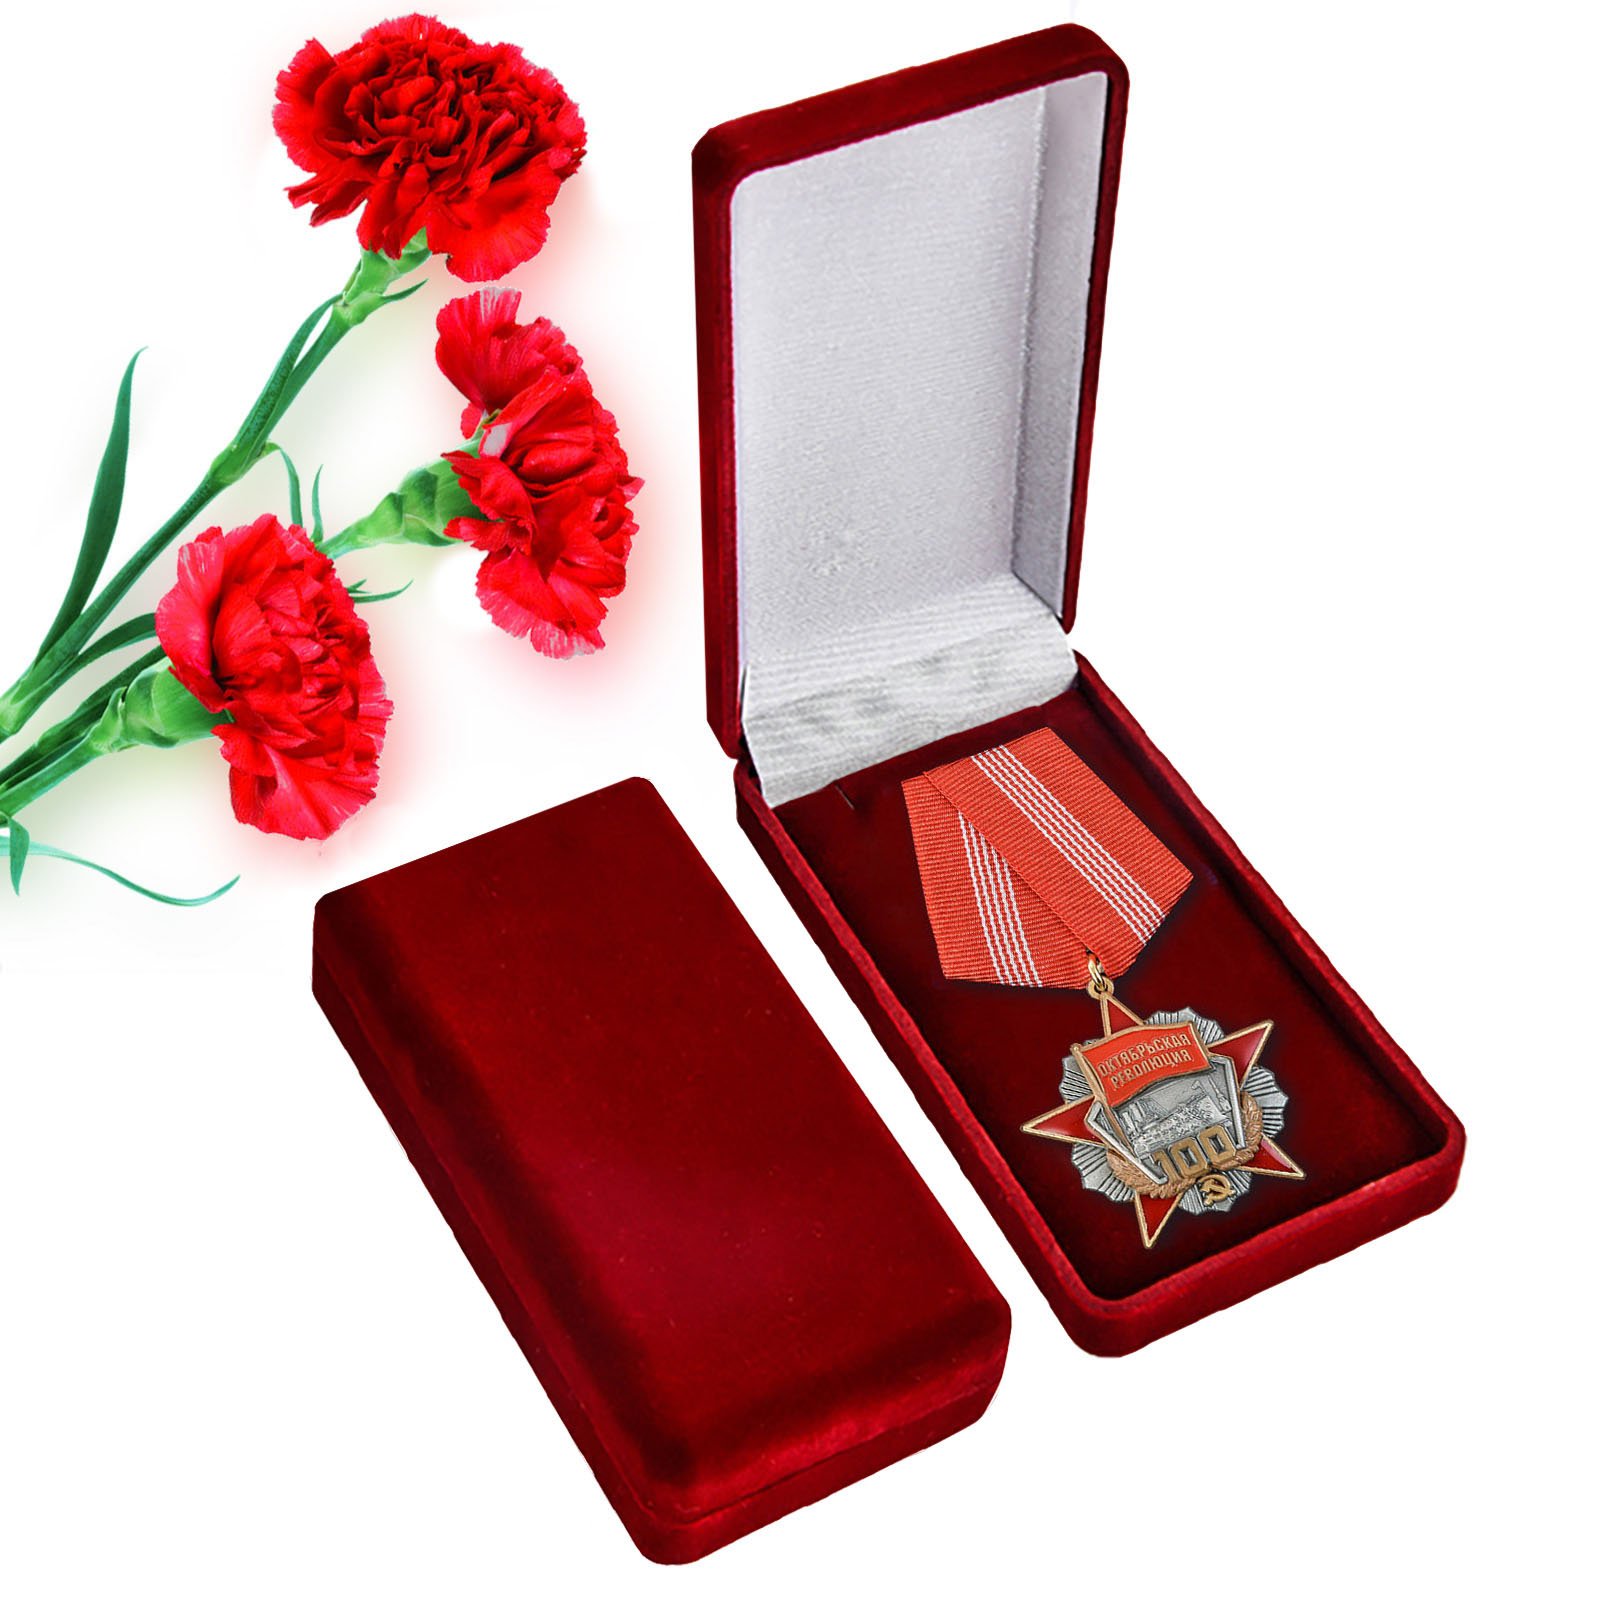 Медаль "100 лет Революции" в футляре